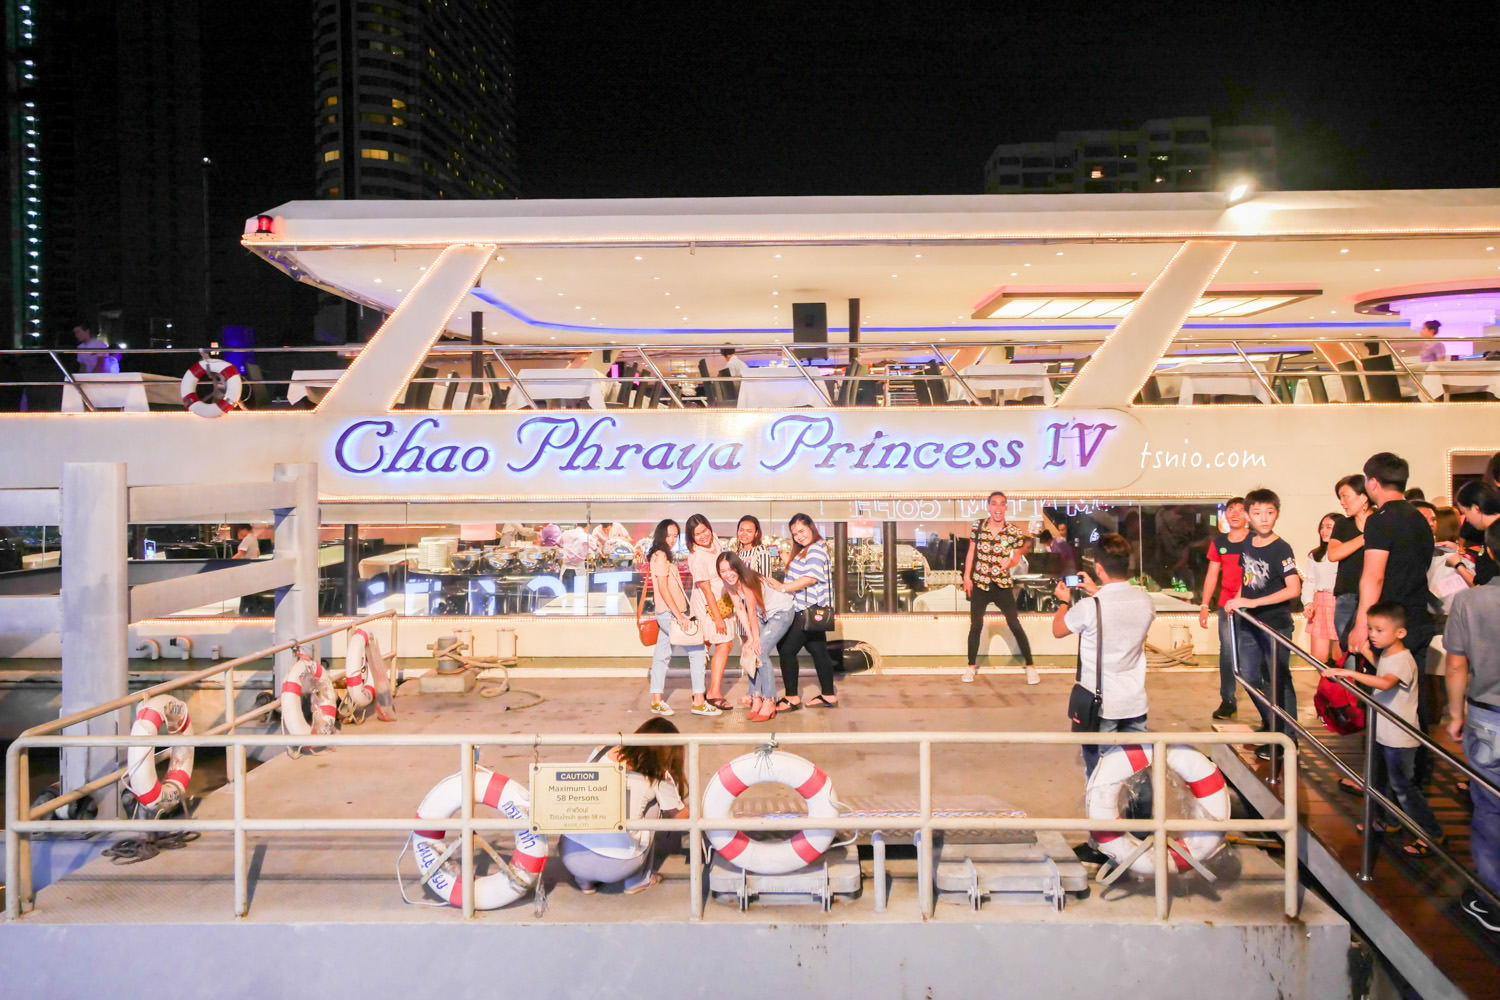 泰國曼谷昭披耶河遊船推薦 五間曼谷遊船品牌比較 蔡小妞實際體驗心得